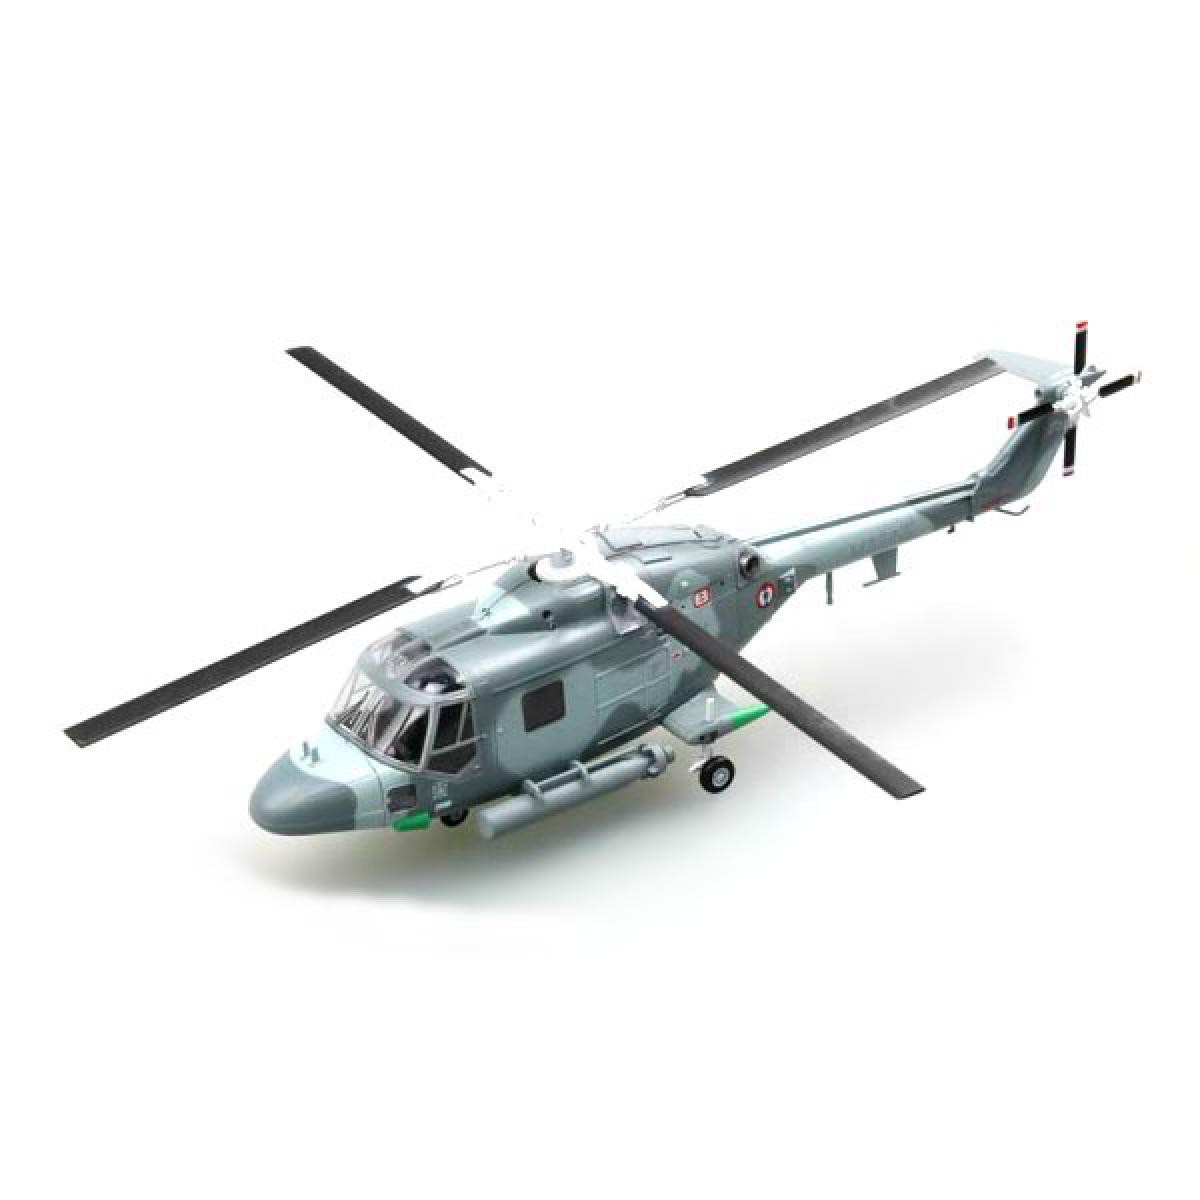 Easy Model - Modèle réduit : Hélicoptère Lynx HAS Mk.2 : Marine Nationale Française 2005 - Modélisme